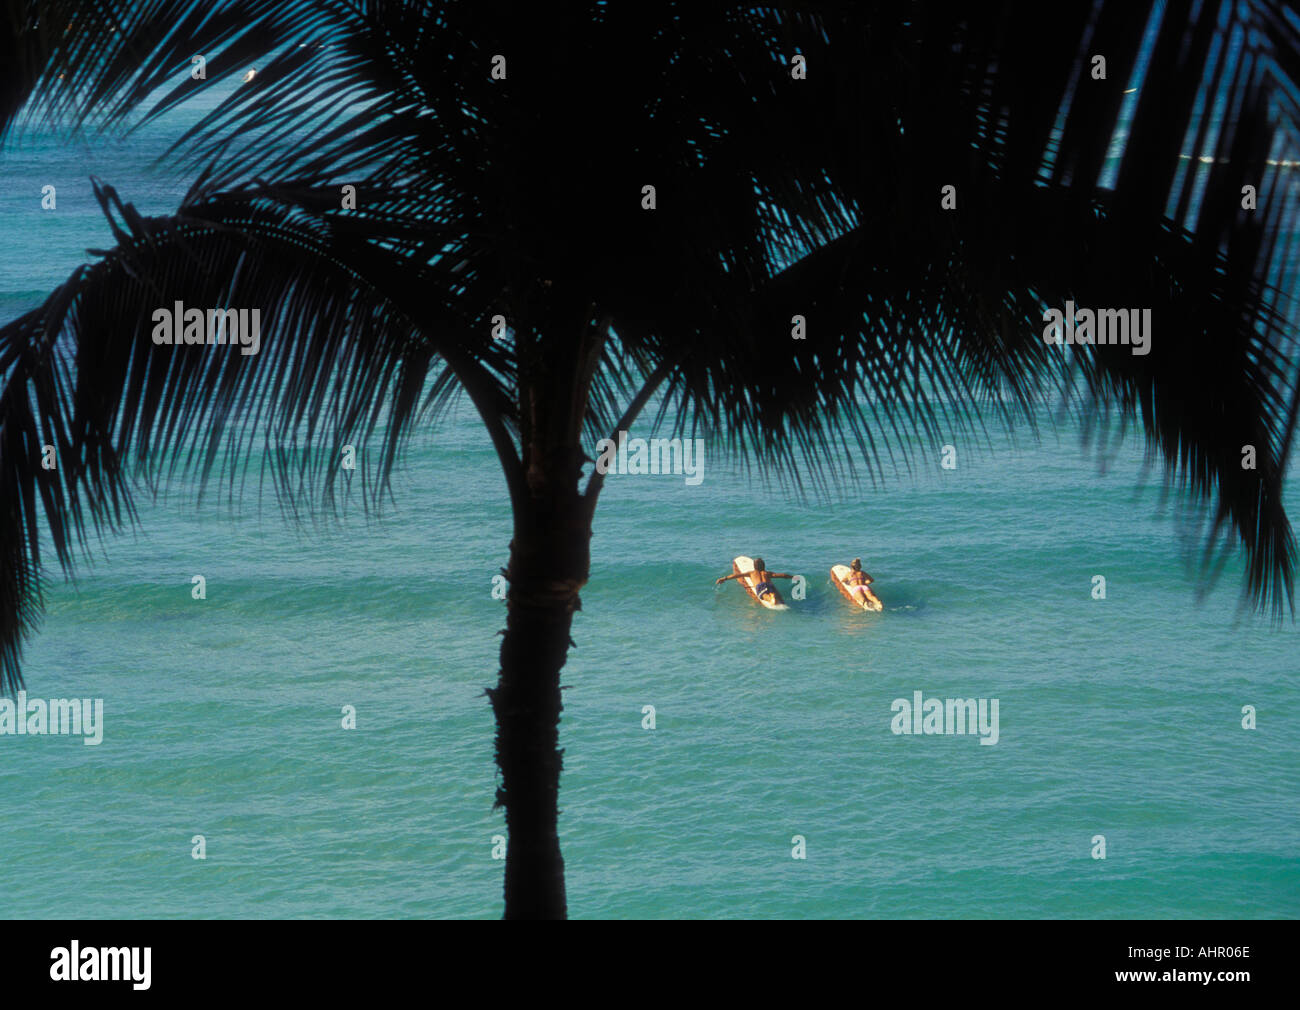 Paar, Paddeln Sie auf Surfbretter Blick durch Palmen vom Hotel Outrigger Waikiki Strand Oahu Hawaii Stockfoto